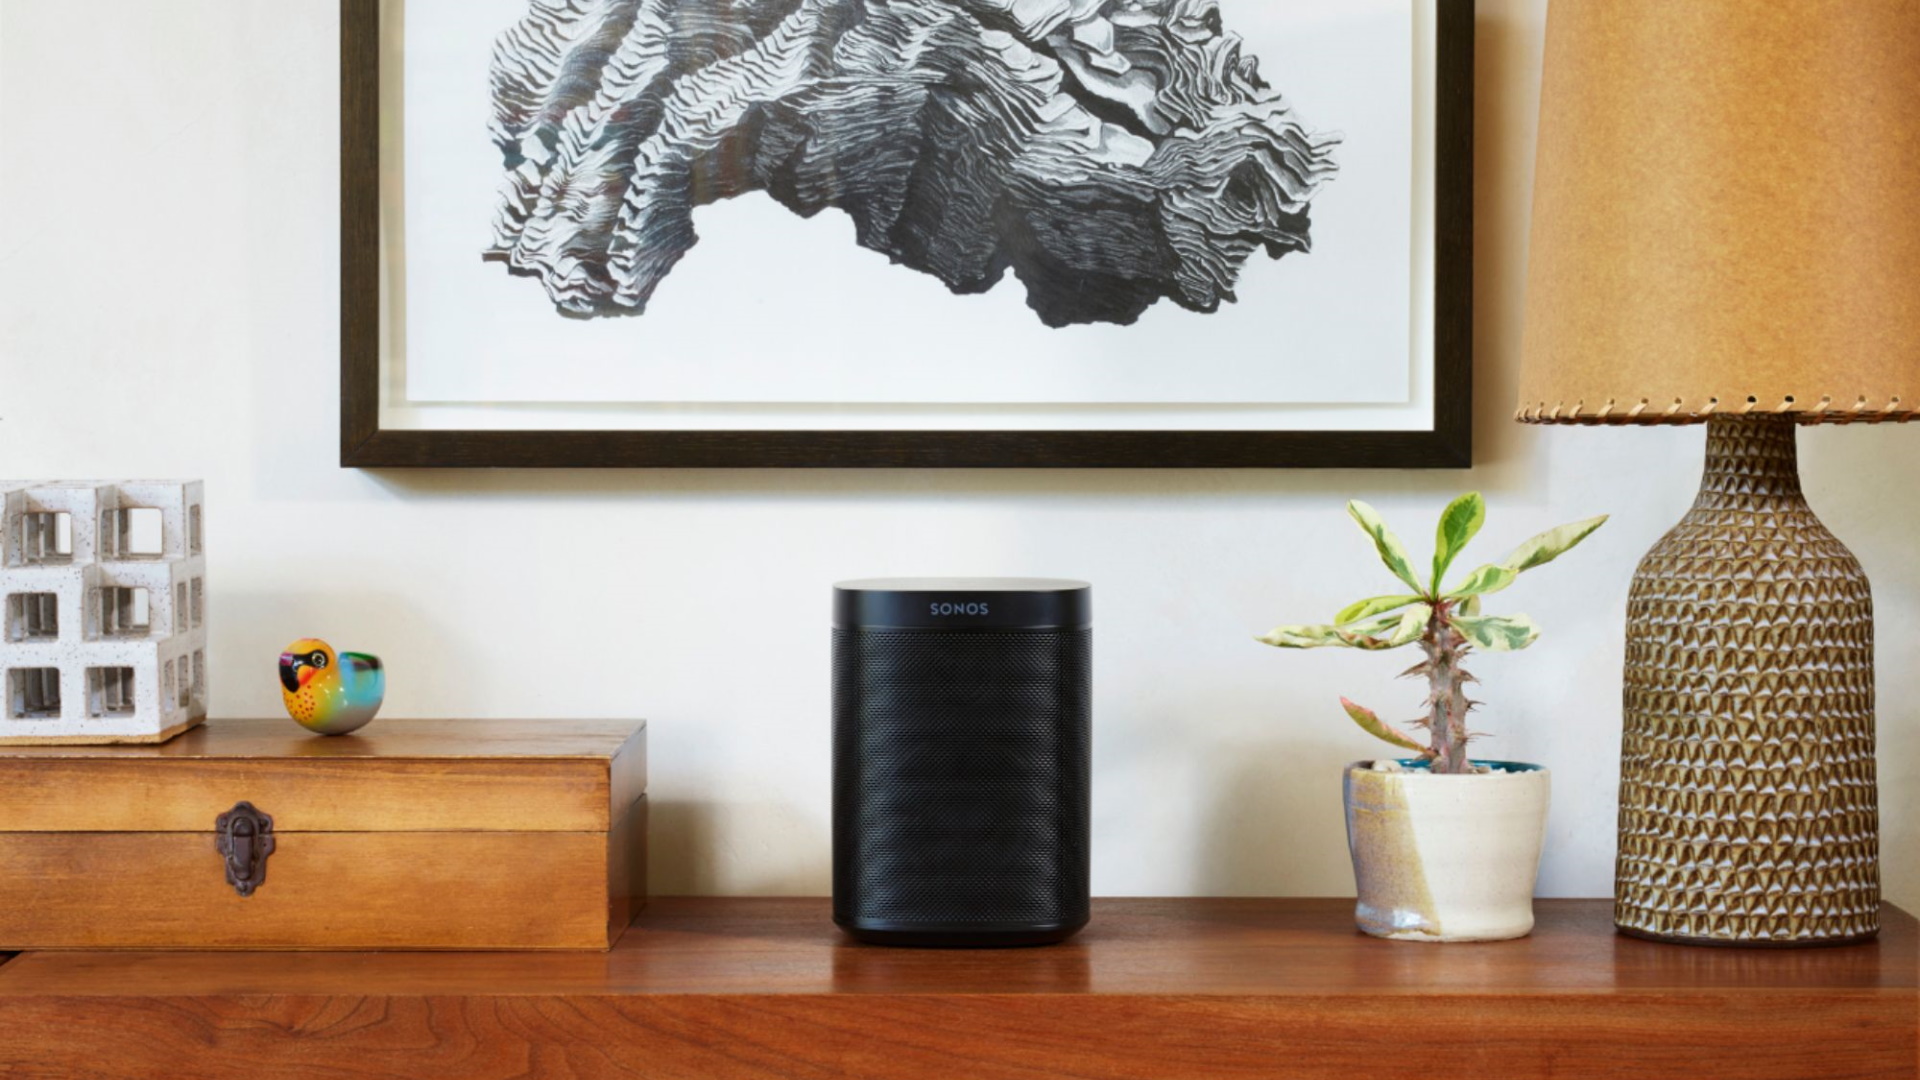 This luxury speaker brings Alexa smarts to art gallery design